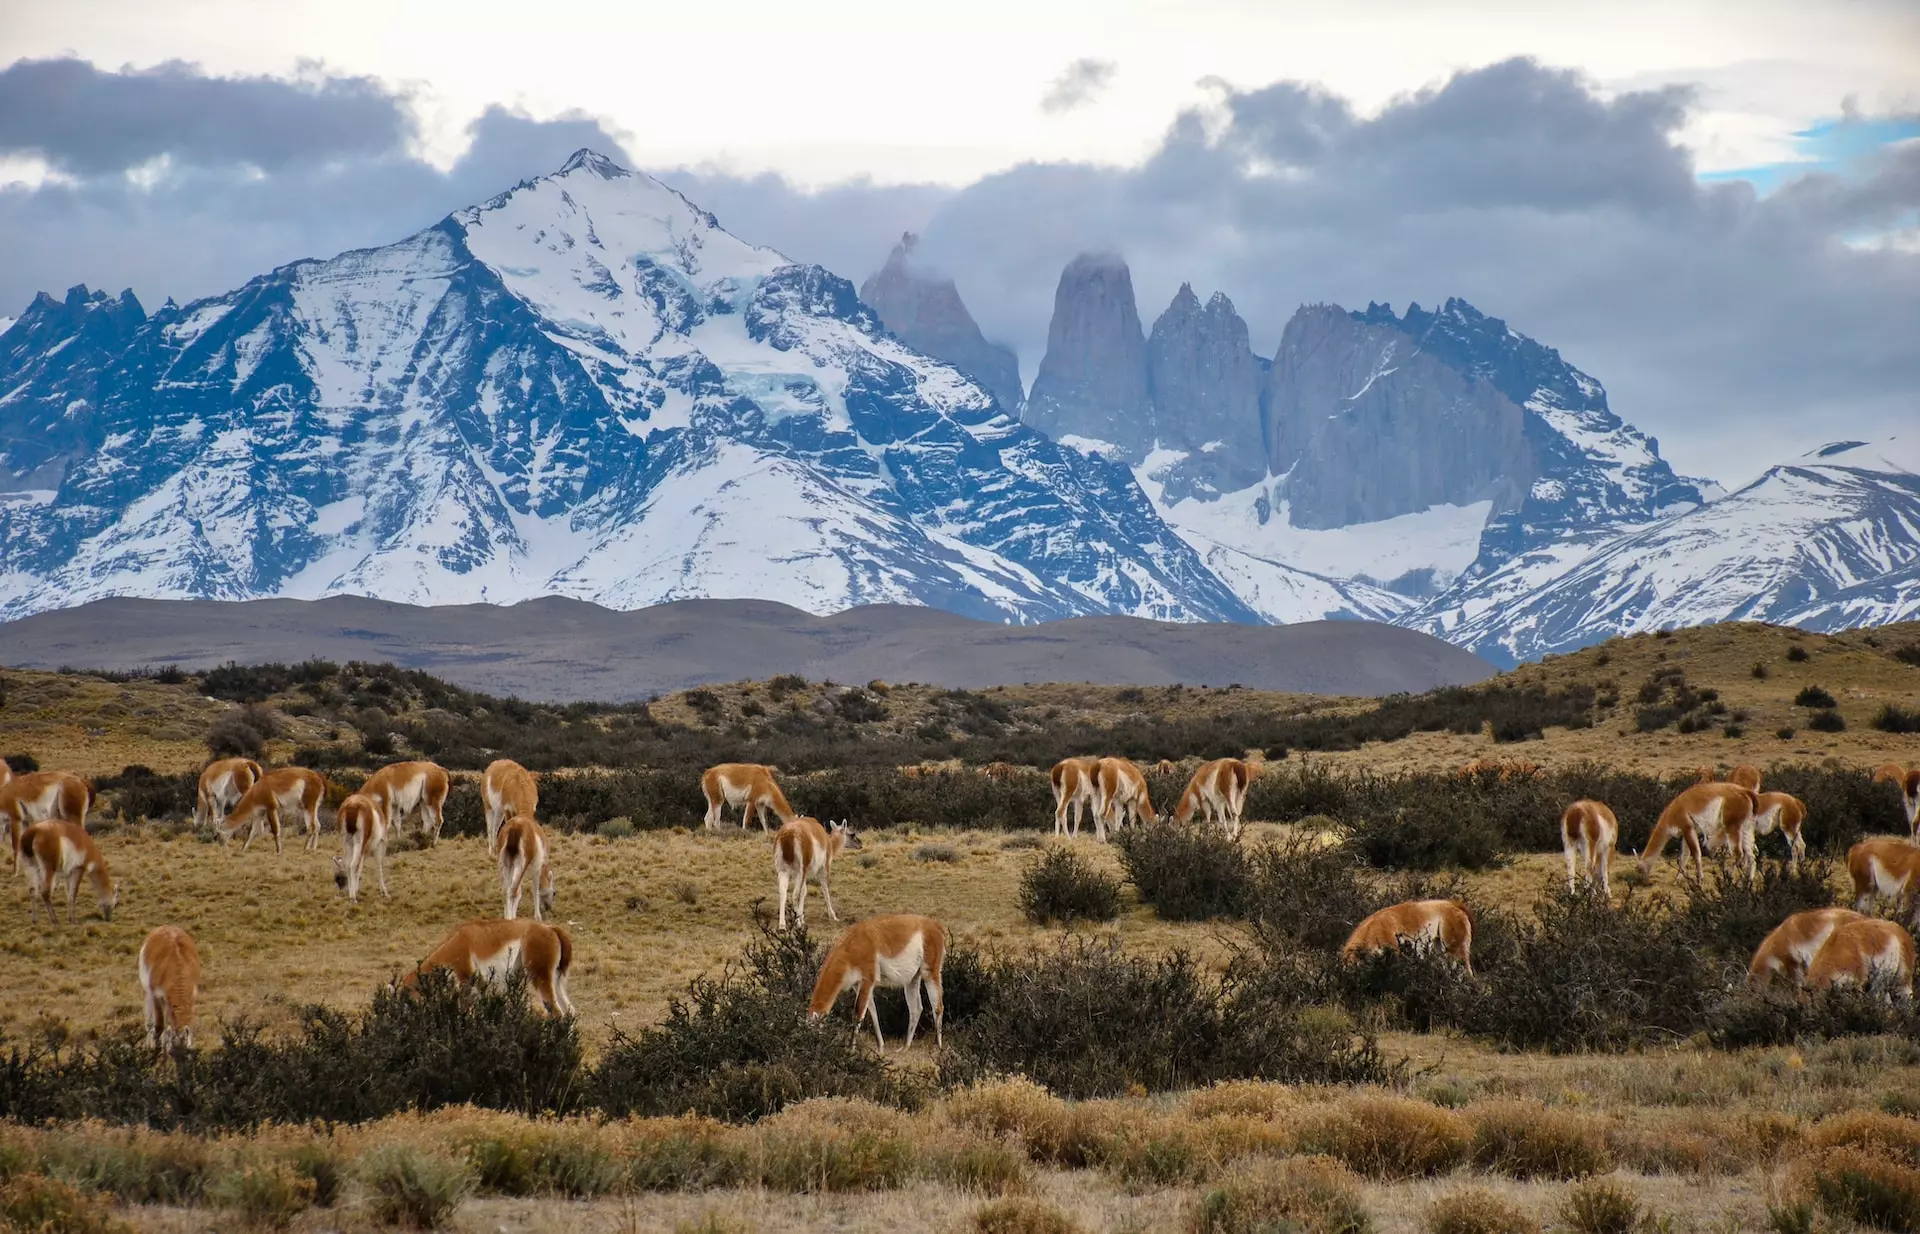 L'indimenticabile esperienza del W Trek al Torres Del Paine (Patagonia)